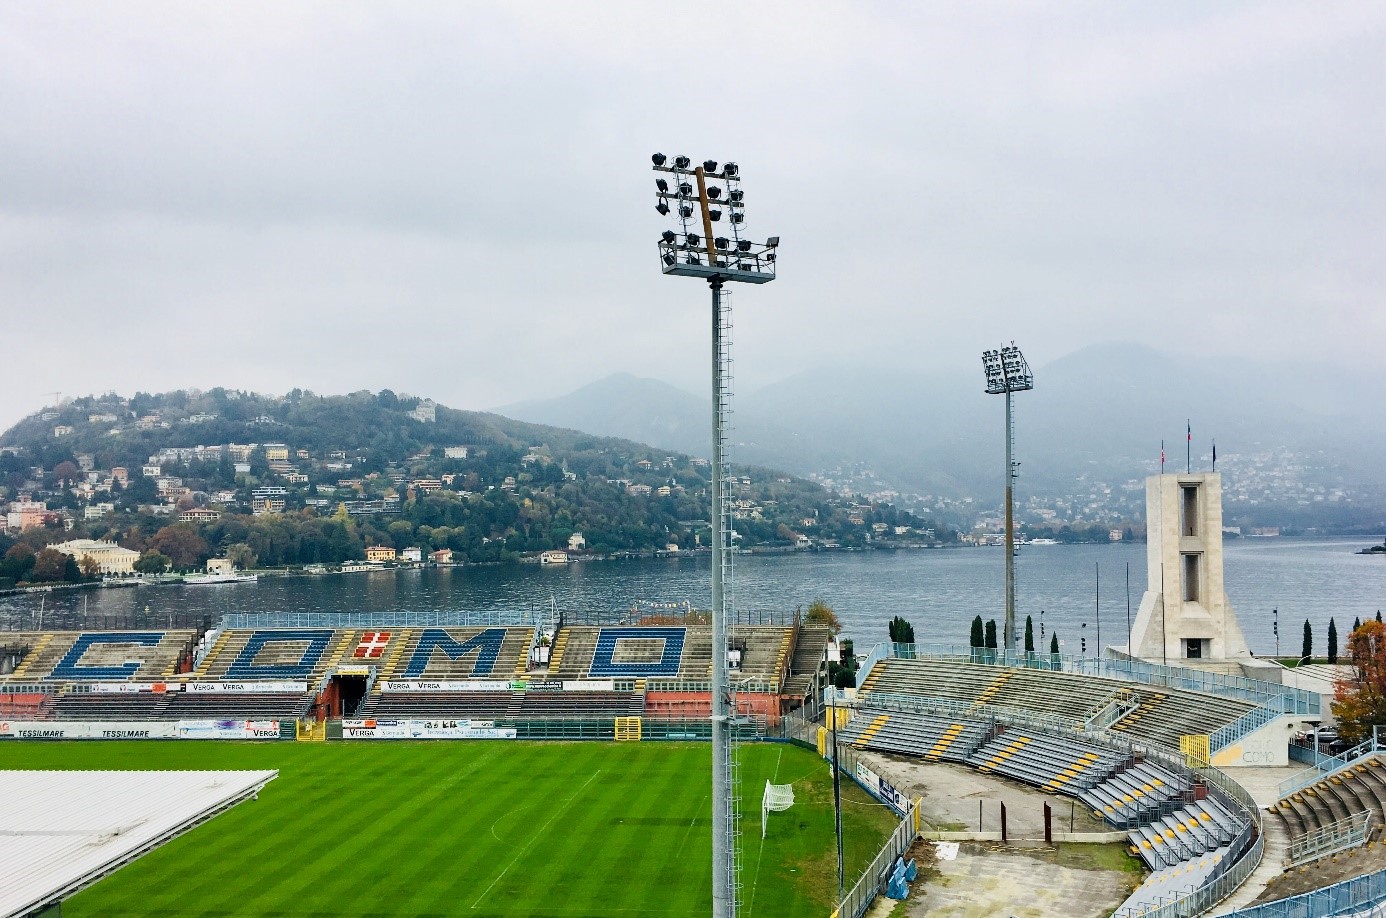 LIVE: Como 1907 - FC Lugano 